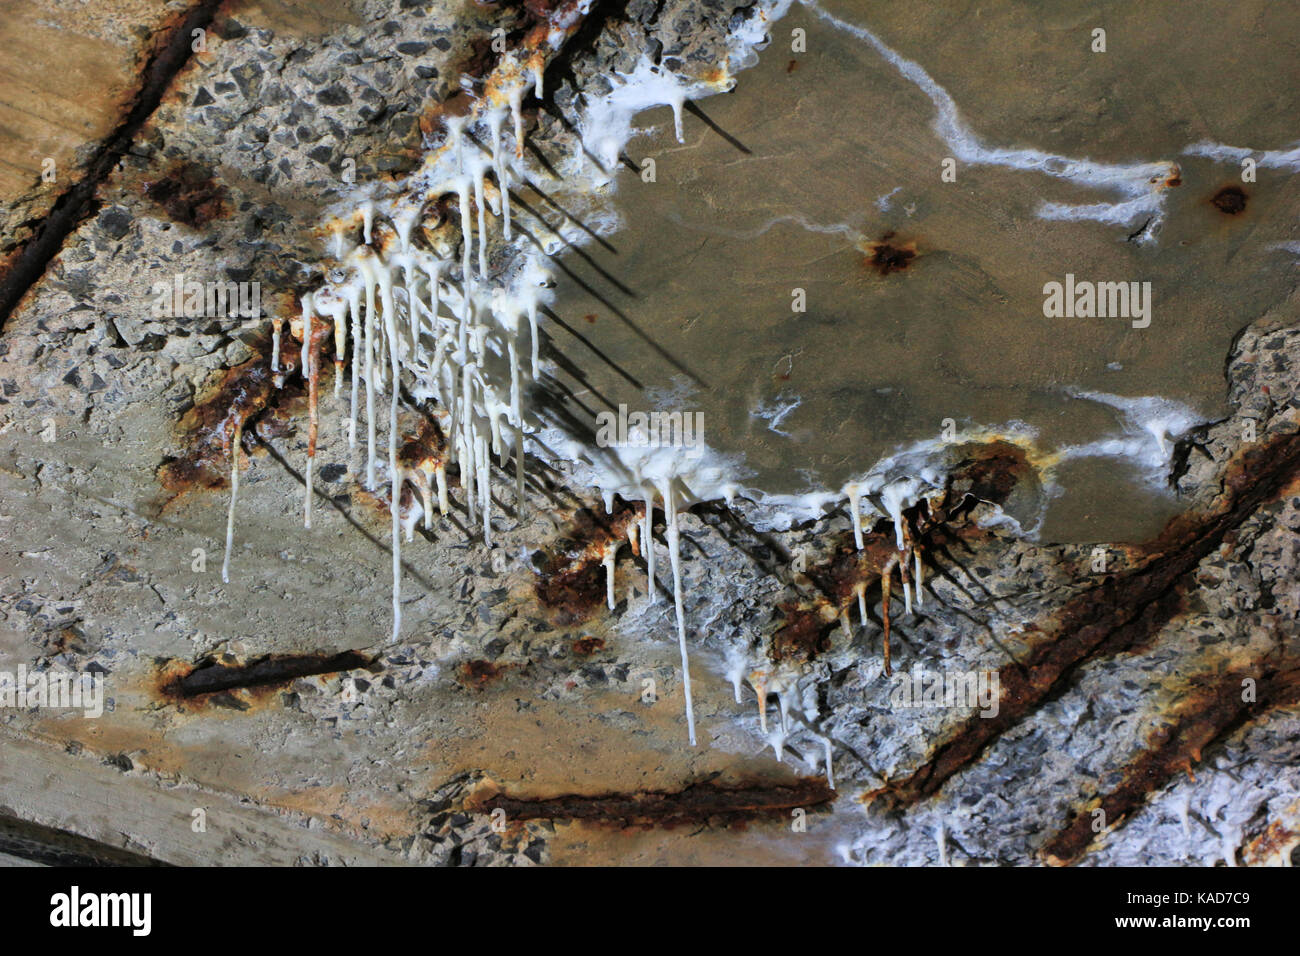 Le sel et les limes lessivage à partir de formes concrètes stalactites dans sous-sol de l'usine de papier eddy b e, Ottawa, Canada, fermée en 2007. Banque D'Images